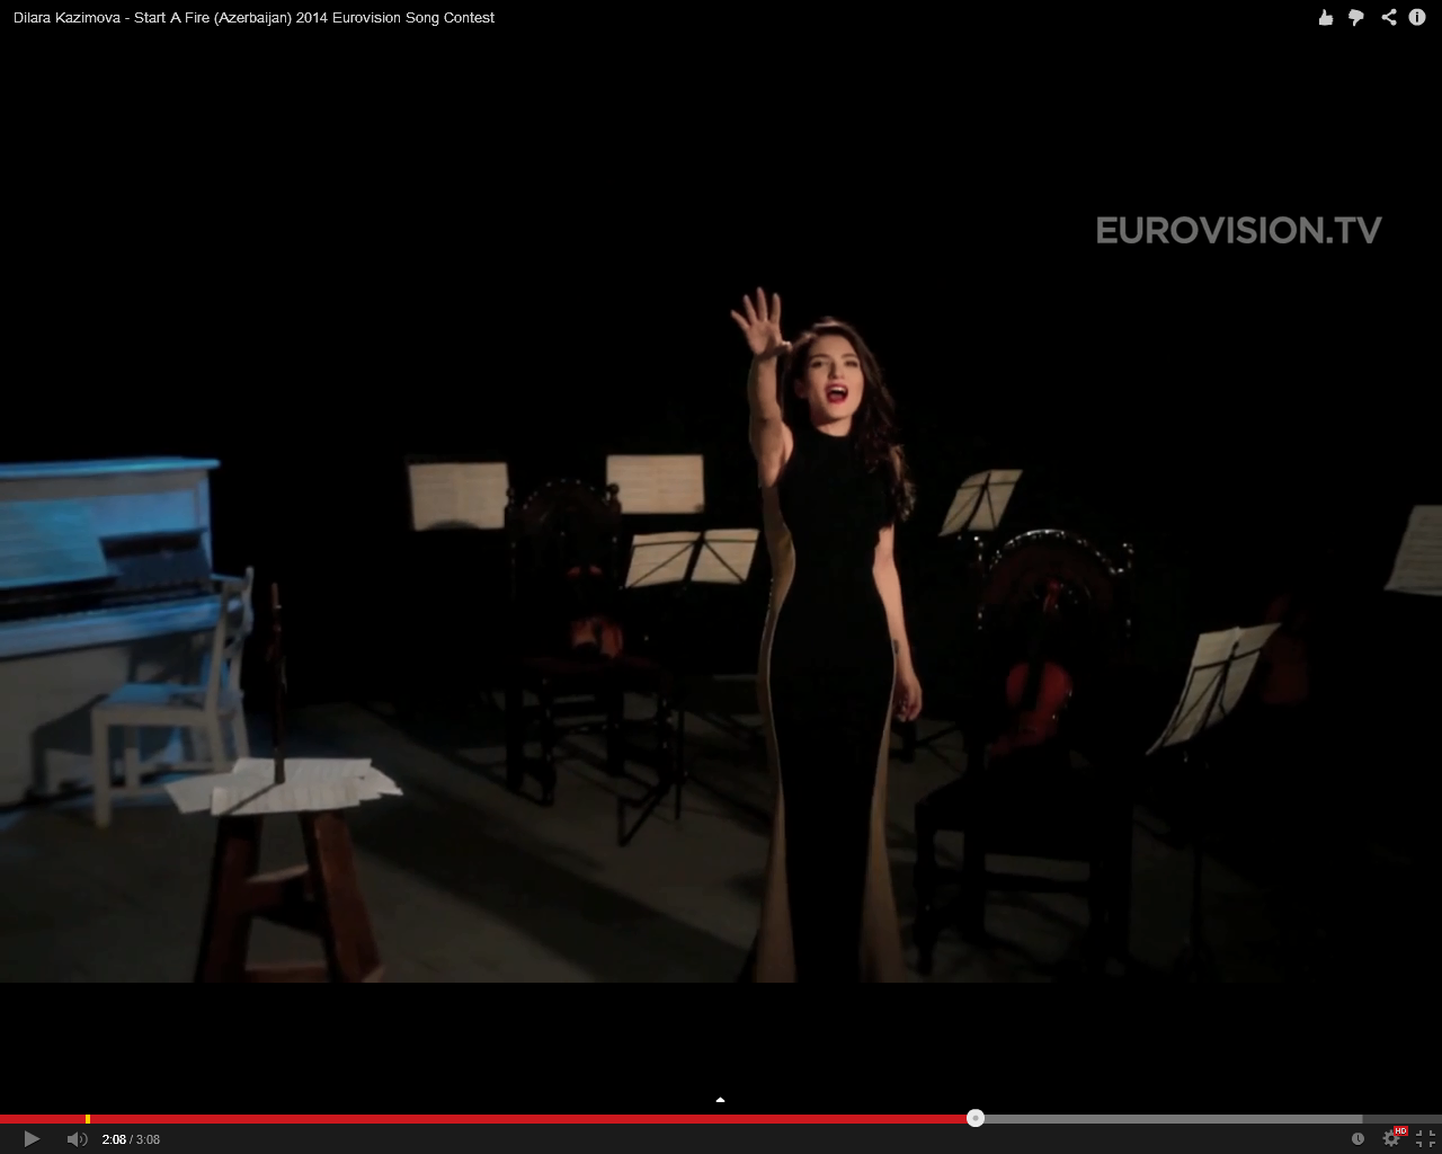 Eurovisioon 2014 - Aserbaidzaani eurolaulLoo nimeks on "Start A Fire" ja seda esitab Dilara Kazimova.